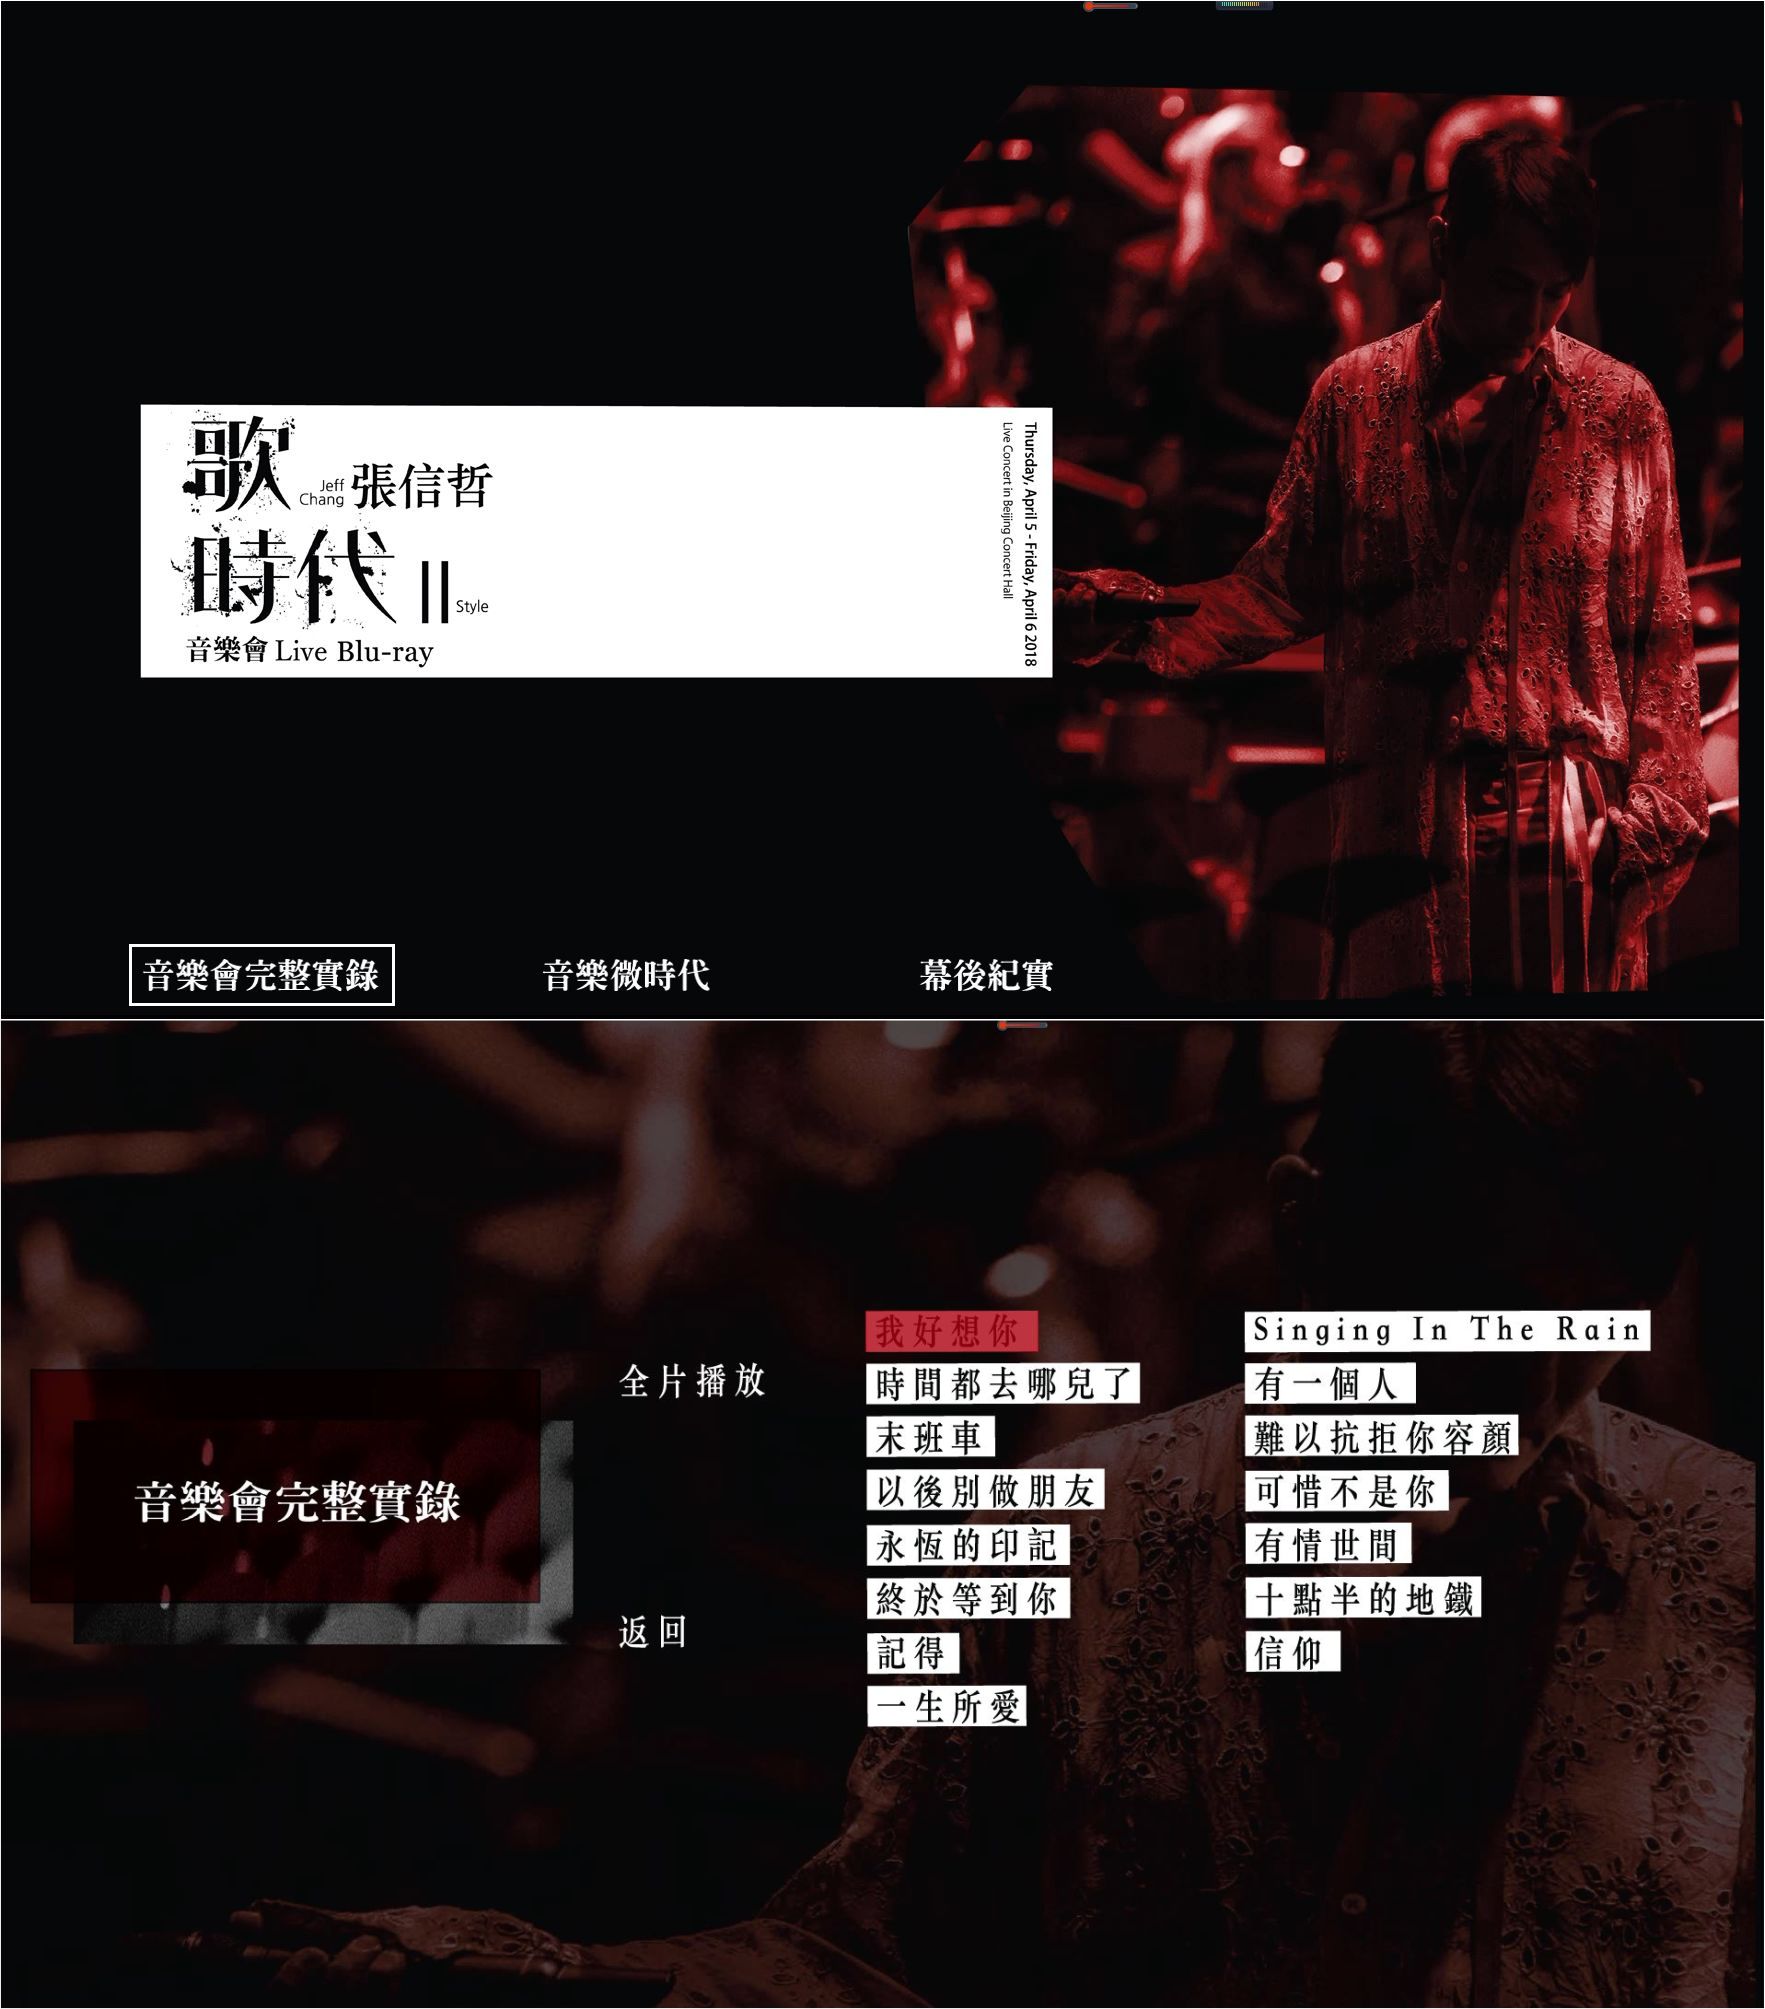 张信哲【歌时代 II 】音乐会 LIVE Jeff Chang - Style II Live Concert in Beijing Concert Hall